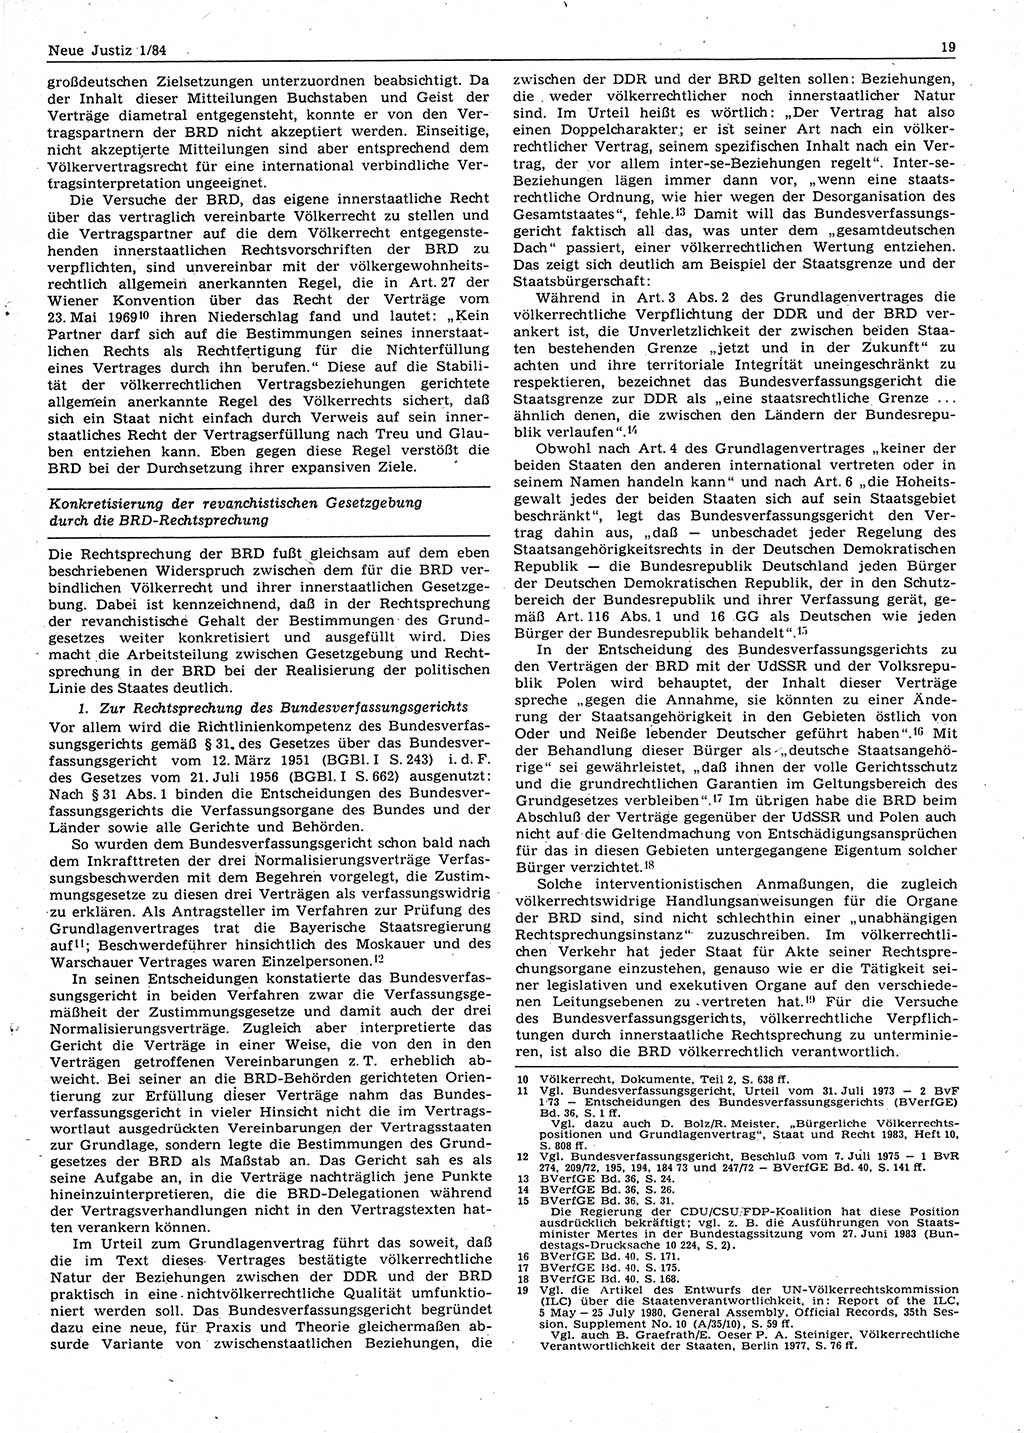 Neue Justiz (NJ), Zeitschrift für sozialistisches Recht und Gesetzlichkeit [Deutsche Demokratische Republik (DDR)], 38. Jahrgang 1984, Seite 19 (NJ DDR 1984, S. 19)